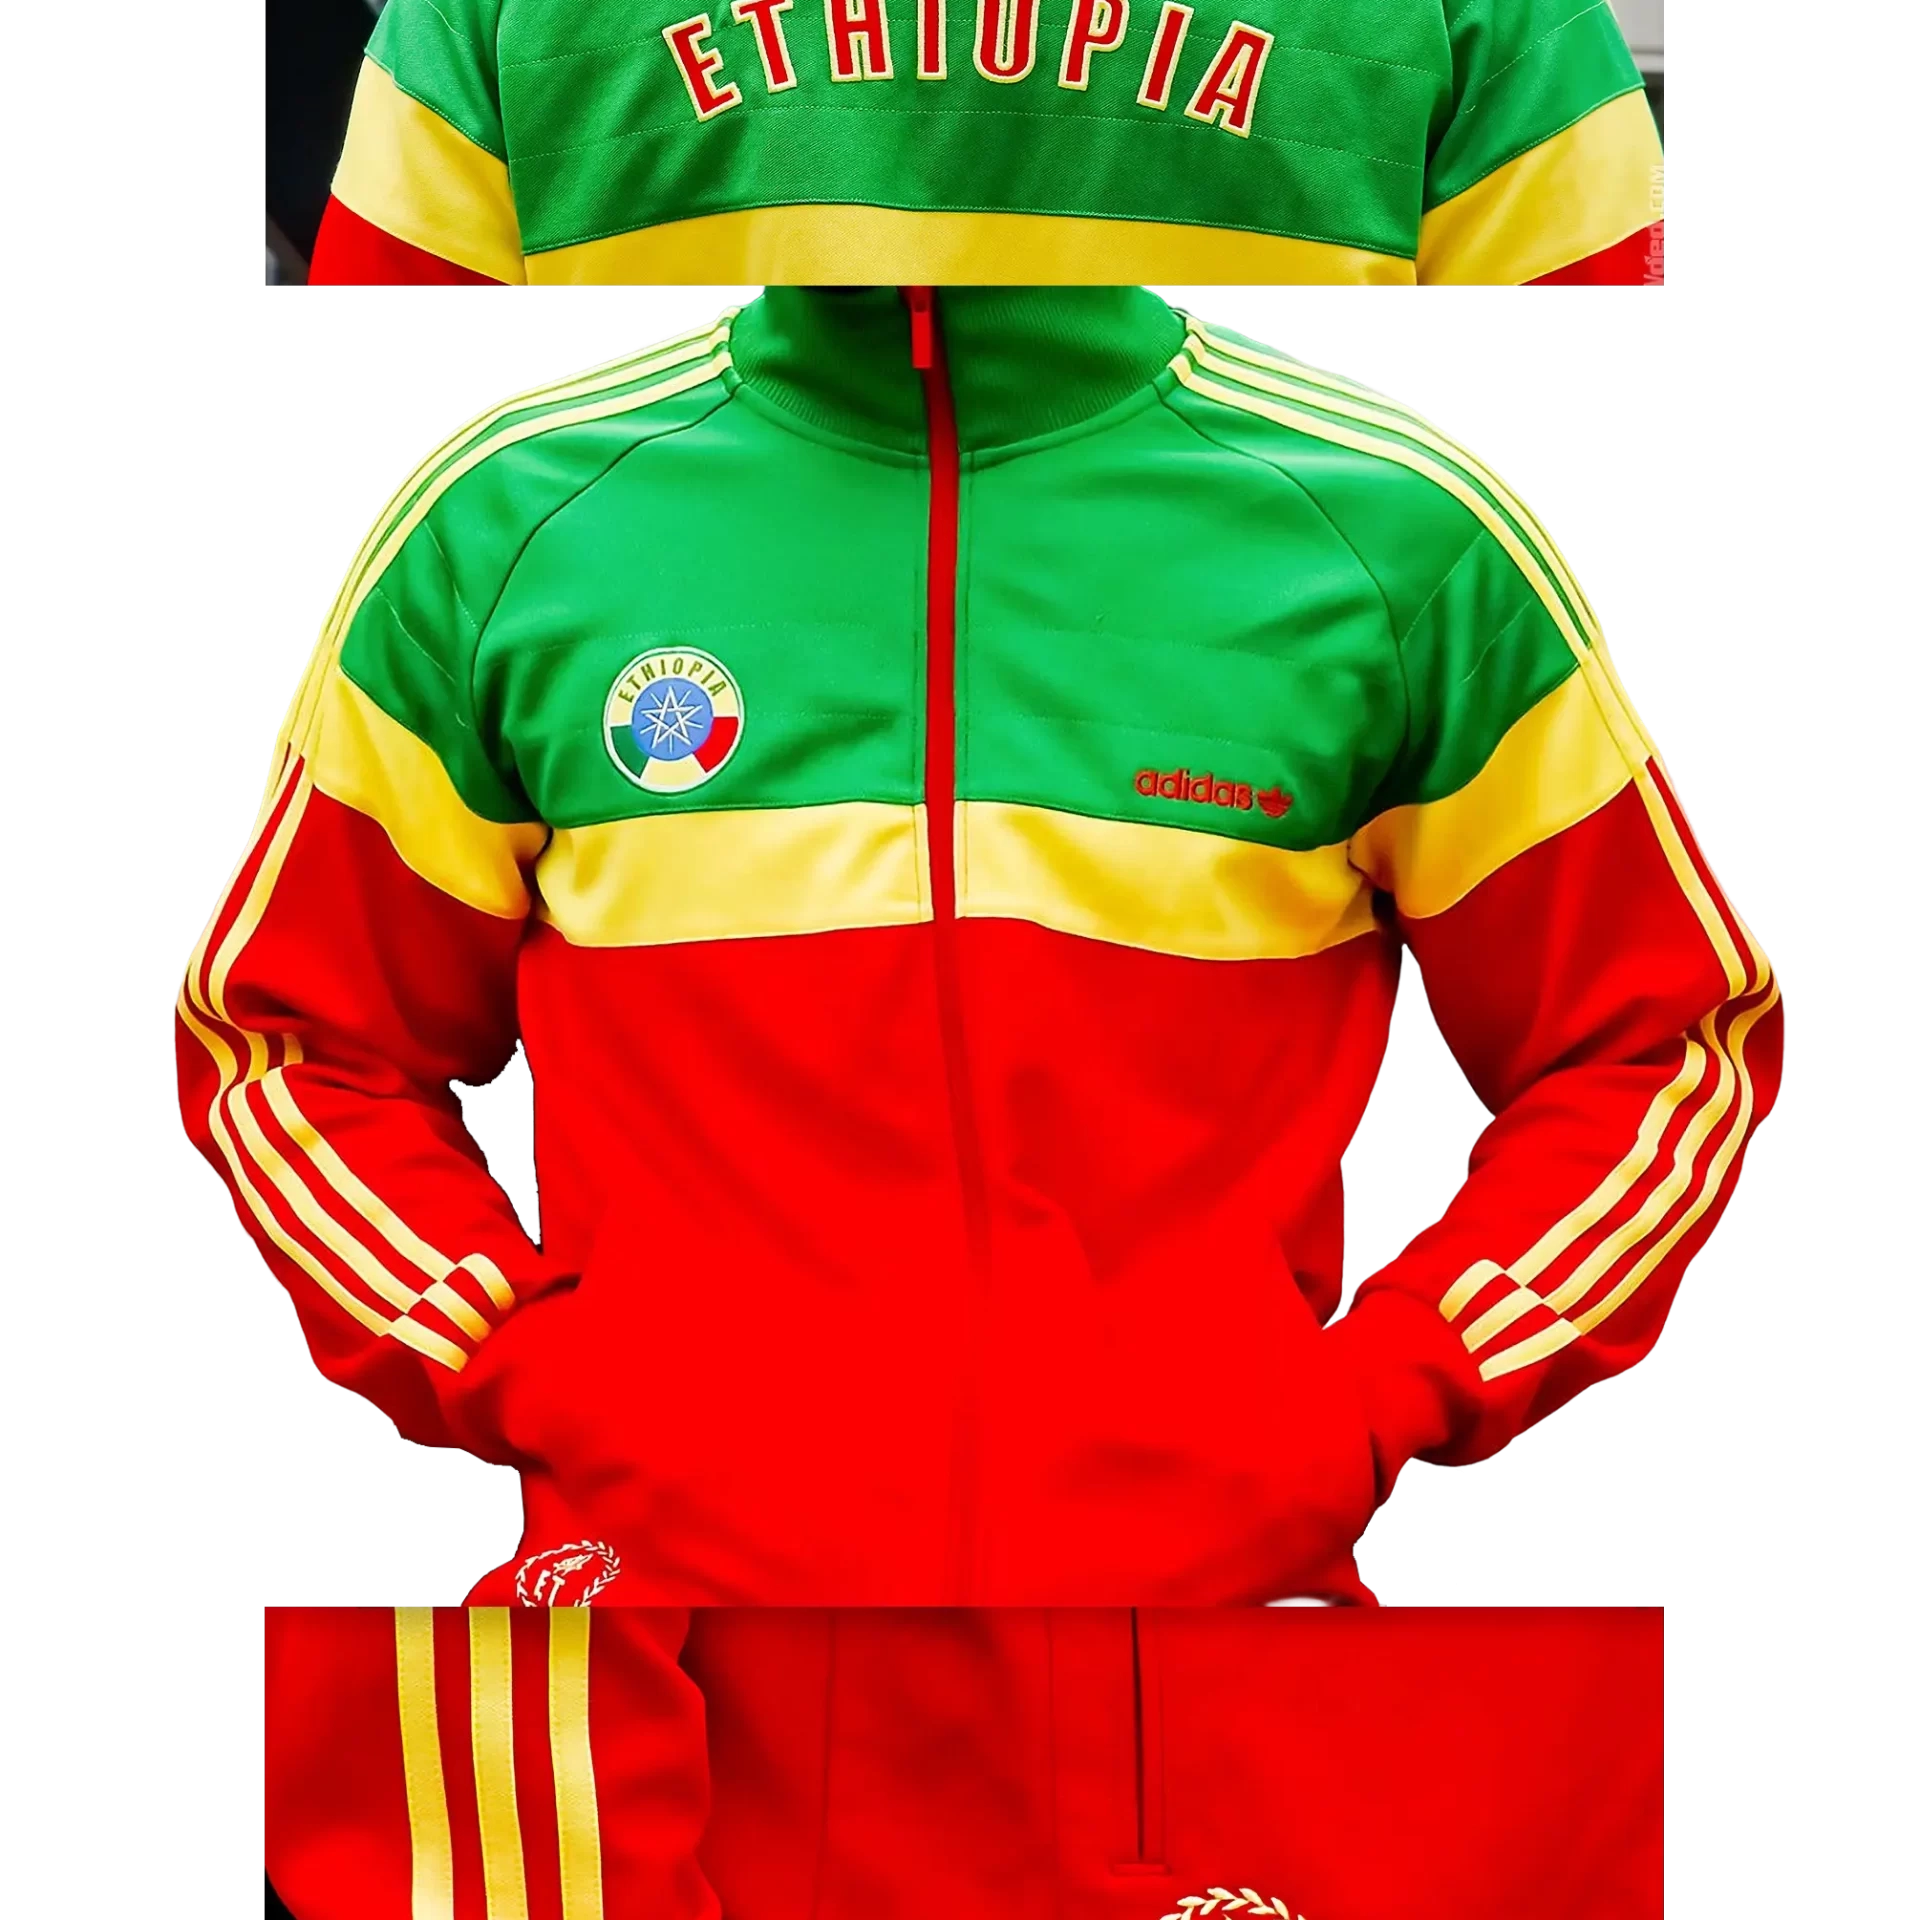 Men's 2008 Ethiopia Track Top by Adidas Originals (EnLawded.com file #lmchk40117ip2y121342kg9st)